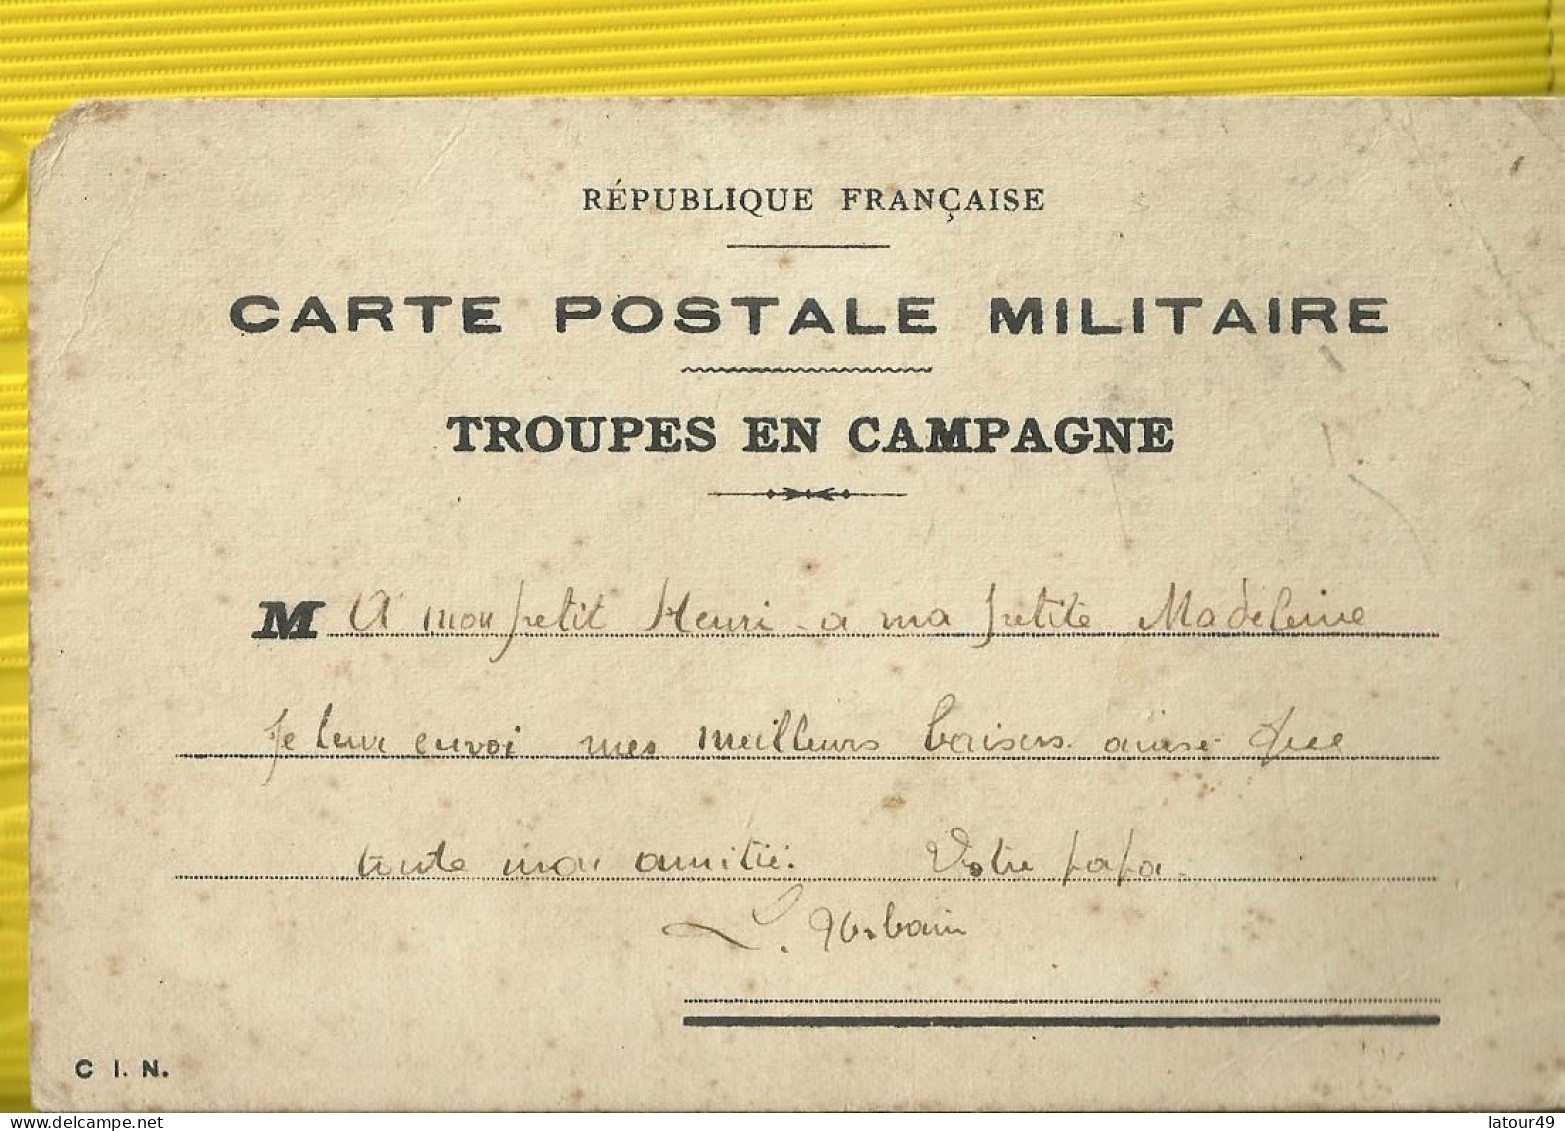 Ww1 Carte Postale Militaire  Troupes De Campagne Dessine Par  Poilu  1914 1915  Souvenir Du Front - Guerre 1914-18